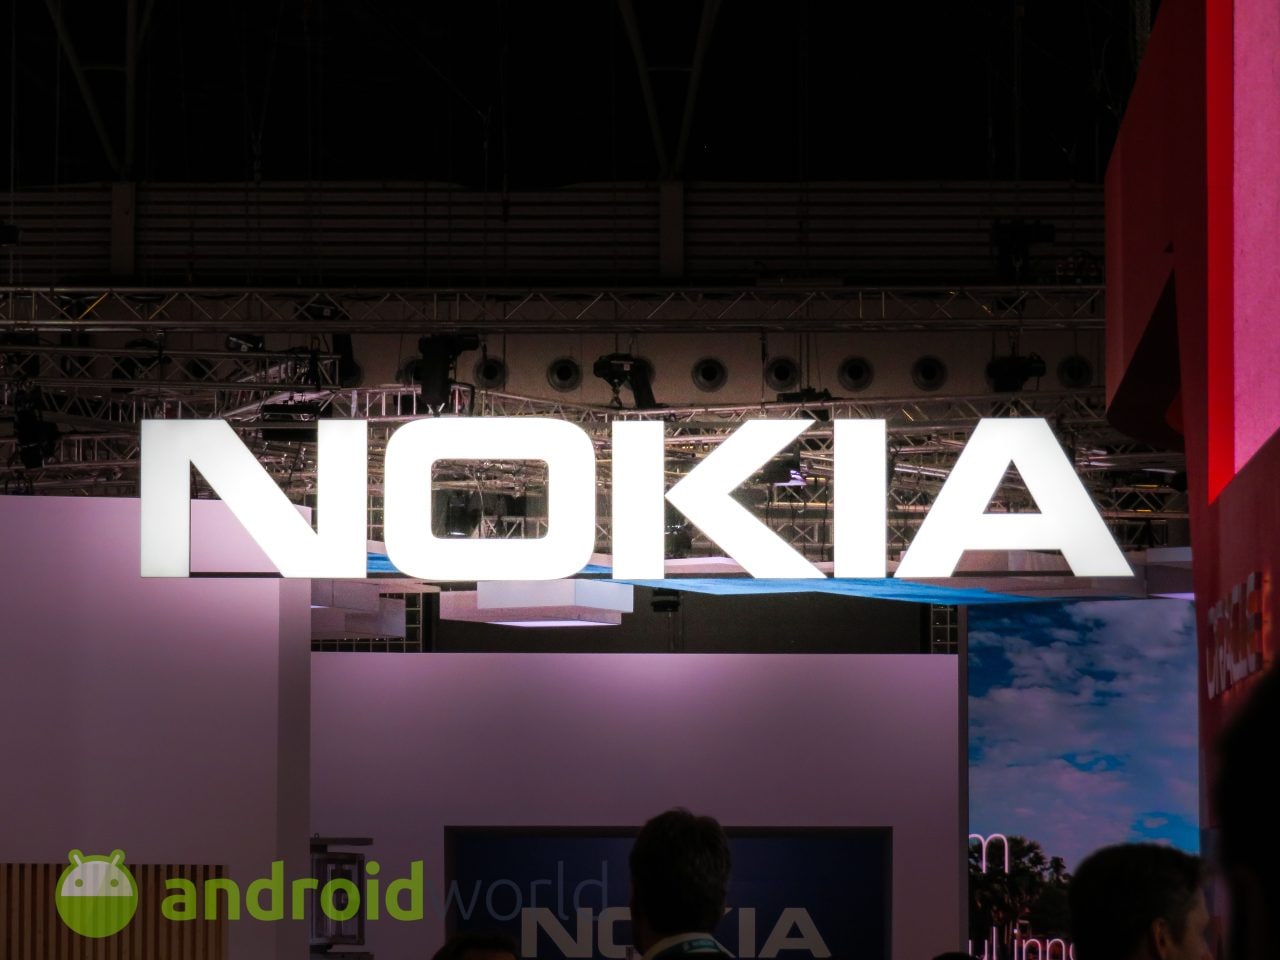 Secondo questo render, il frontale di Nokia 9 potrebbe avere molto in comune con Samsung Galaxy S8